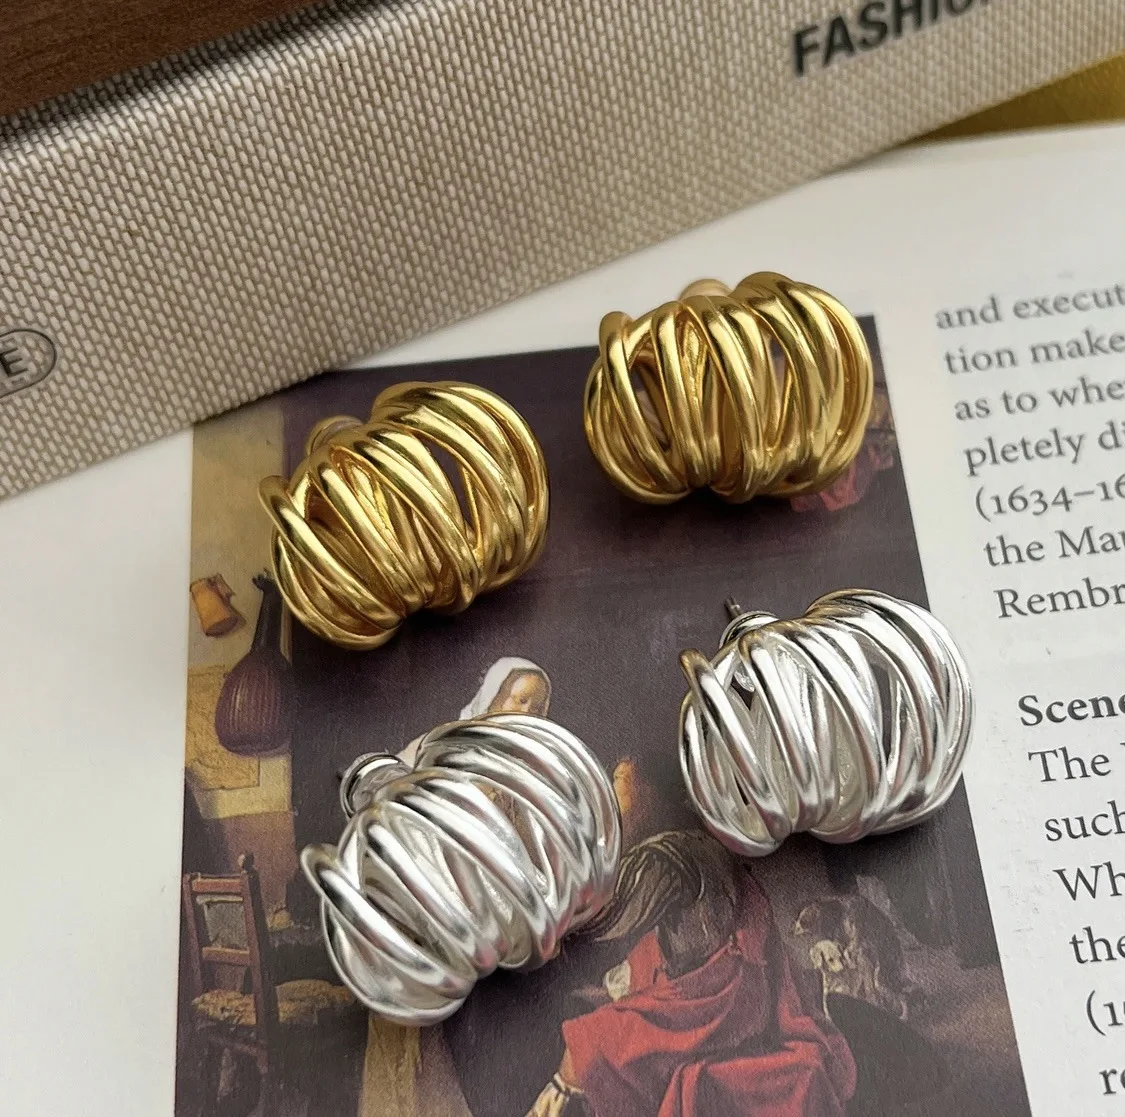 

Уникальные металлические серьги геометрической формы женские серьги неправильной формы в стиле ретро модные нишевые дизайнерские Высококачественные золотые серьги в французском стиле ретро